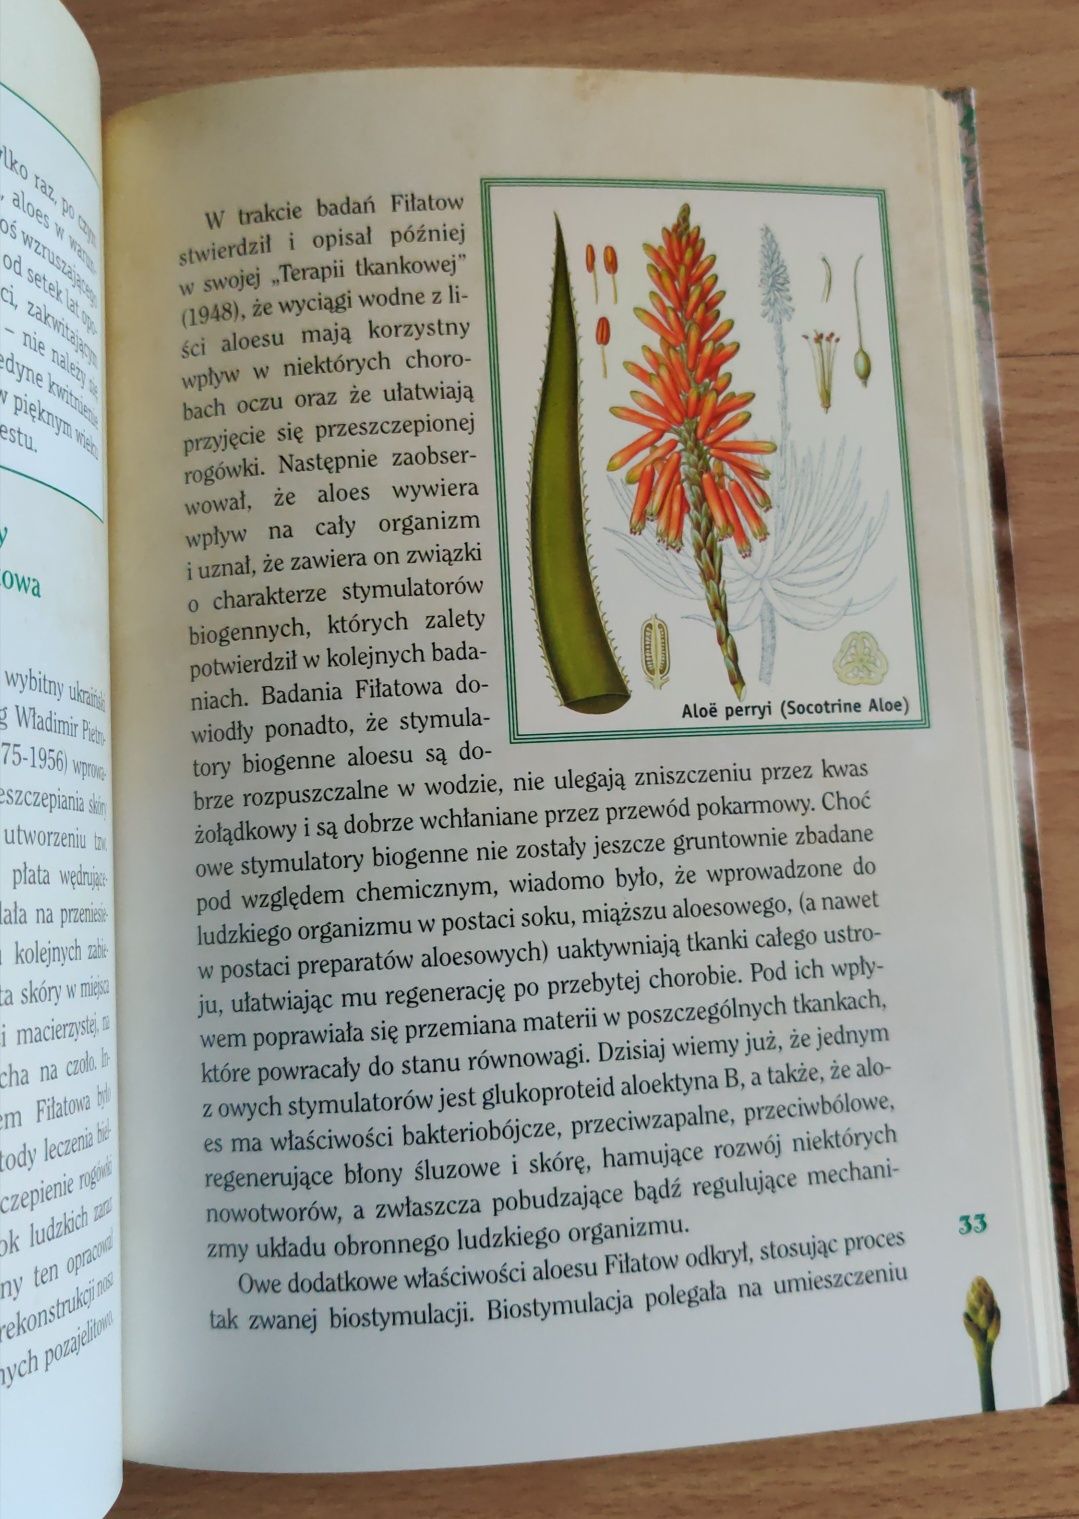 Aloes leczniczy cud natury - książka